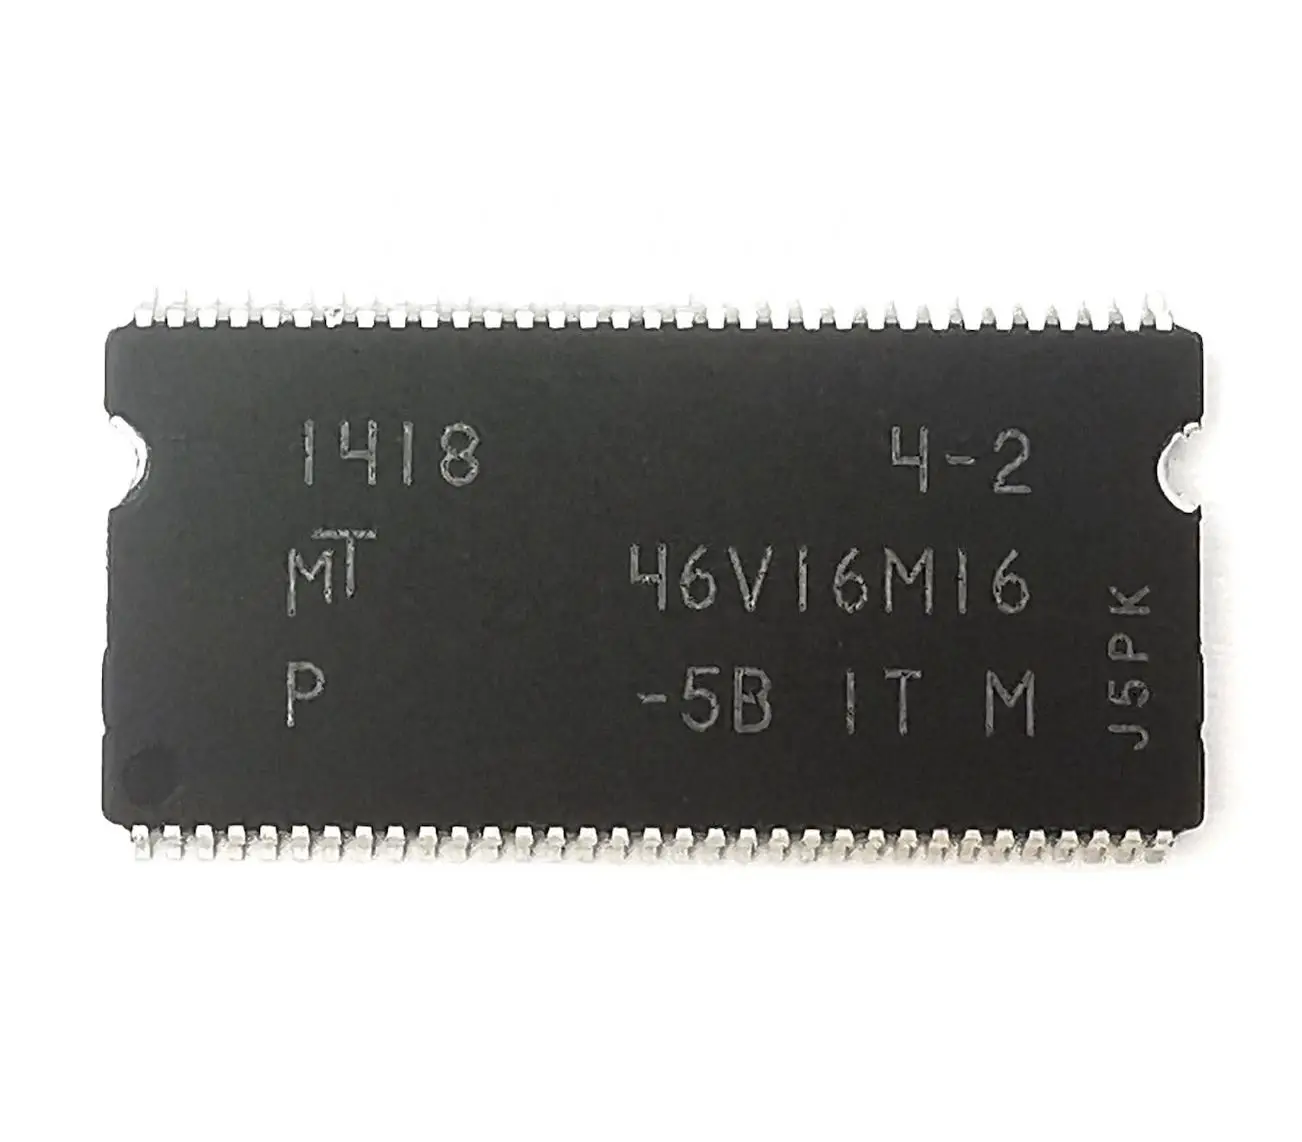 Горячая Распродажа MT46V16M16P 5BIT:M новый оригинальный хранения питания карты, электронные компоненты (1600591478618)